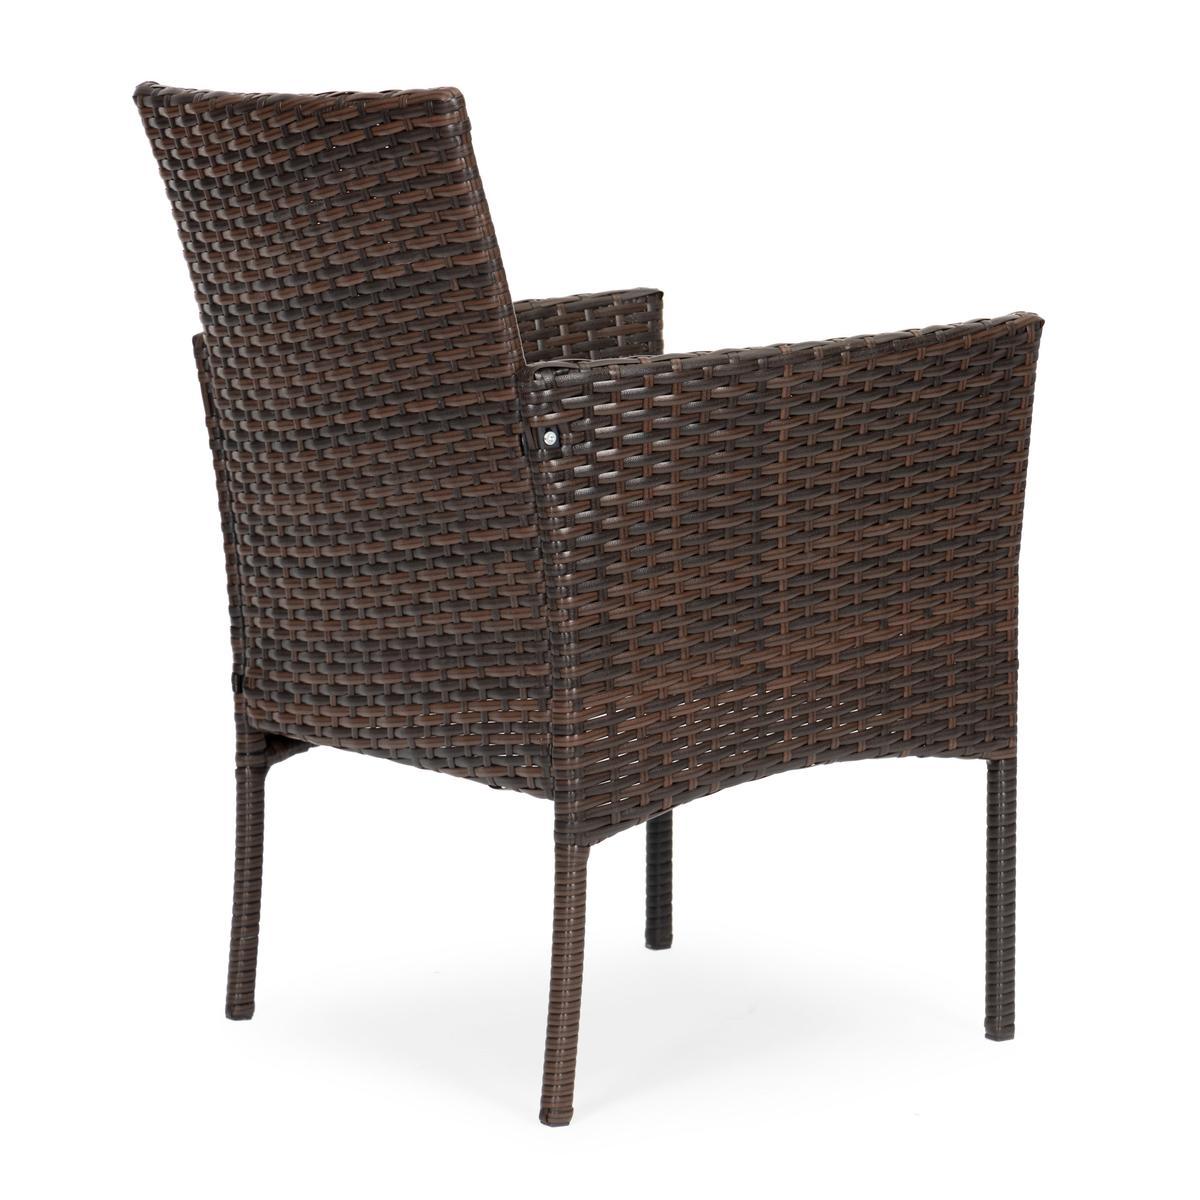 Komplet mebli ogrodowych z rattanu 4 krzesła i stolik ze szklanym blatem brązowy nr. 7